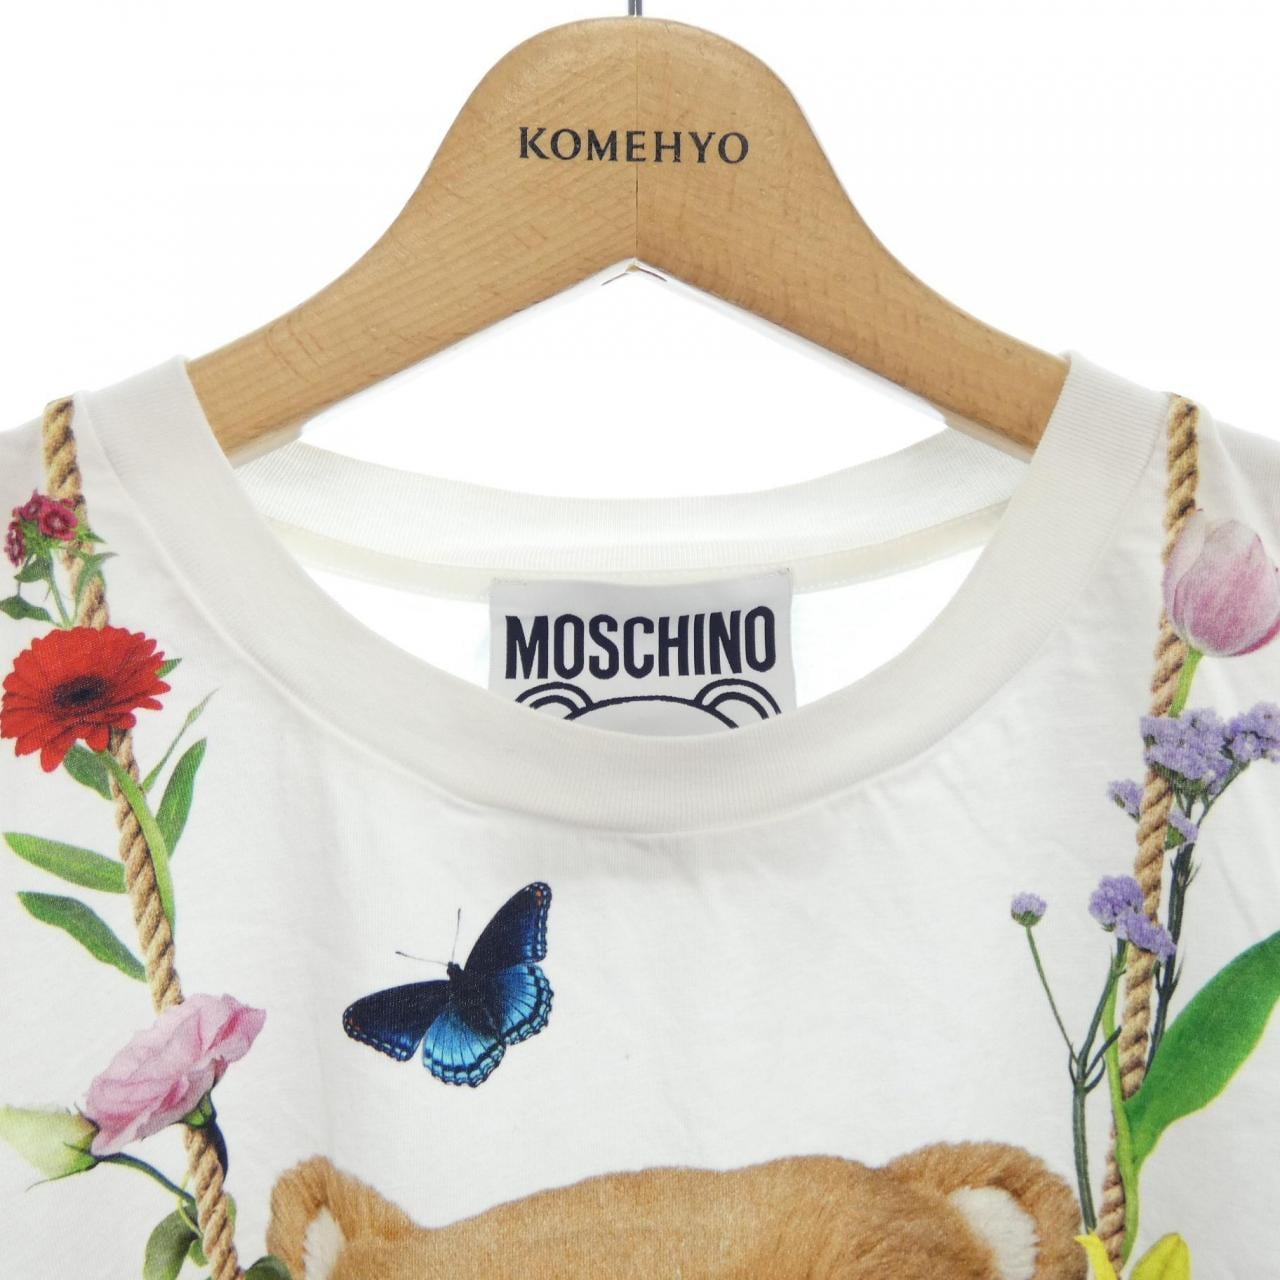 モスキーノクチュール MOSCHINO COUTURE Tシャツ